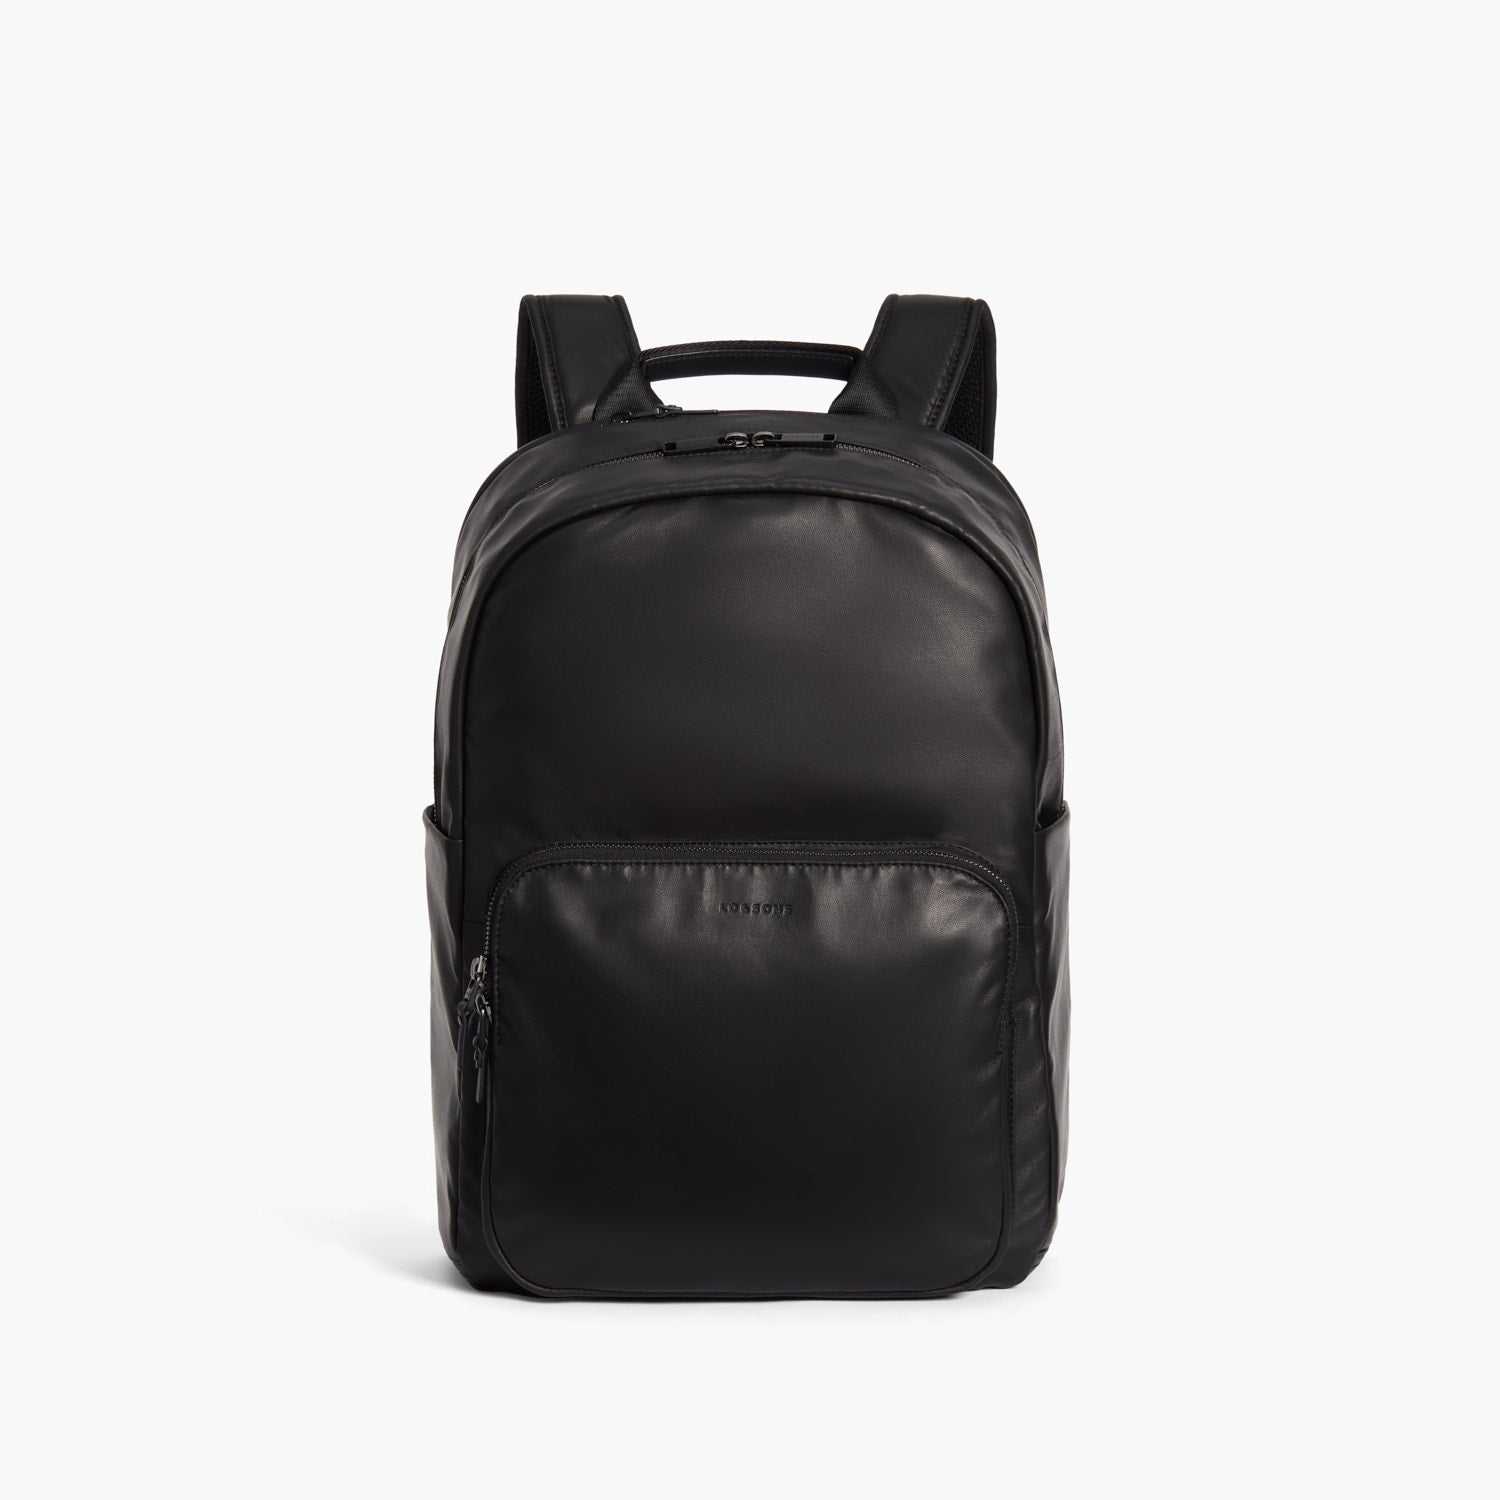 Designer Nylon Backpack - Loved Around the World